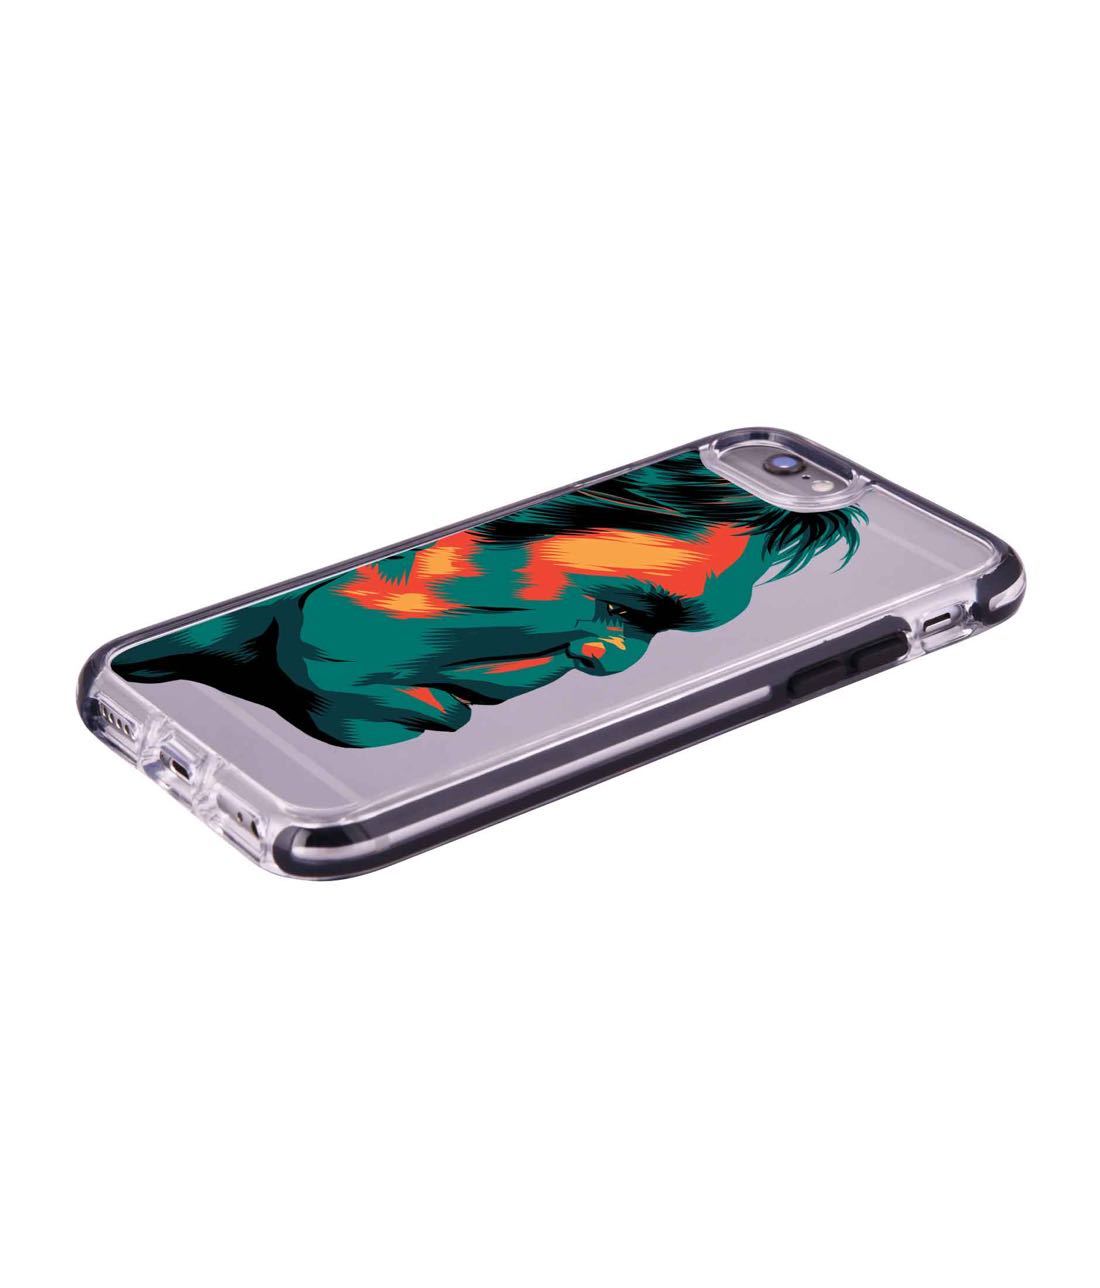 Illuminated Hulk - Extreme Phone Case for iPhone 6S